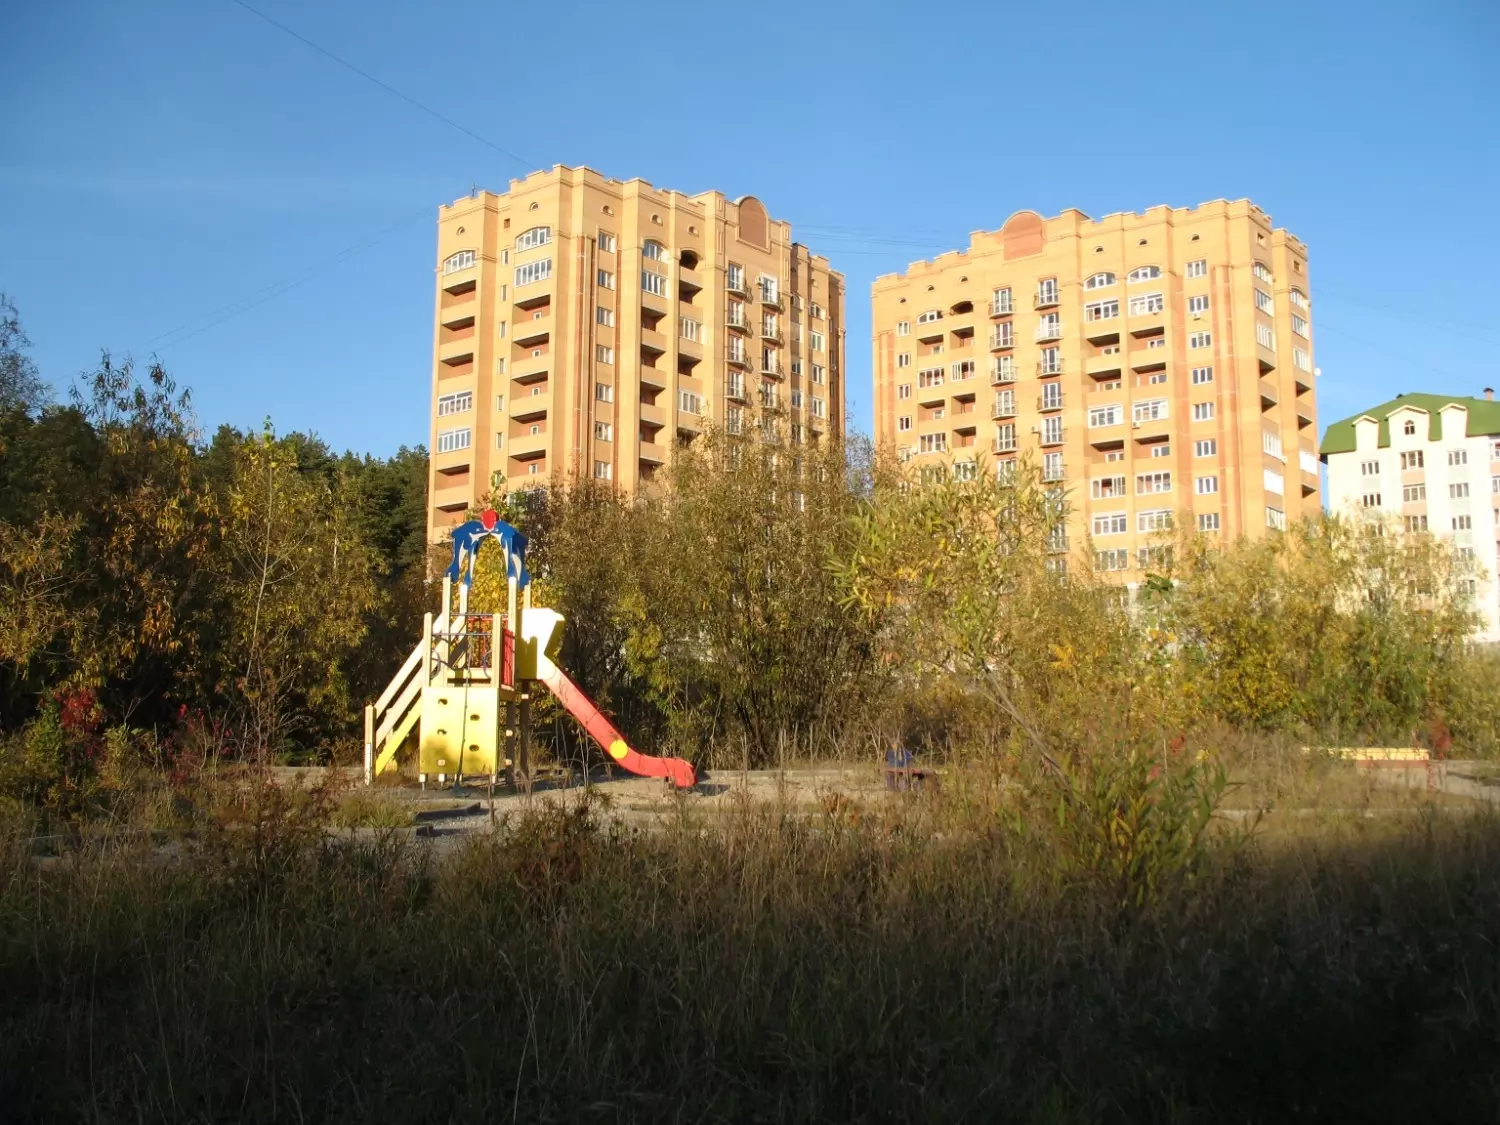 Нижняя Ельцовка - микрорайон Новосибирска